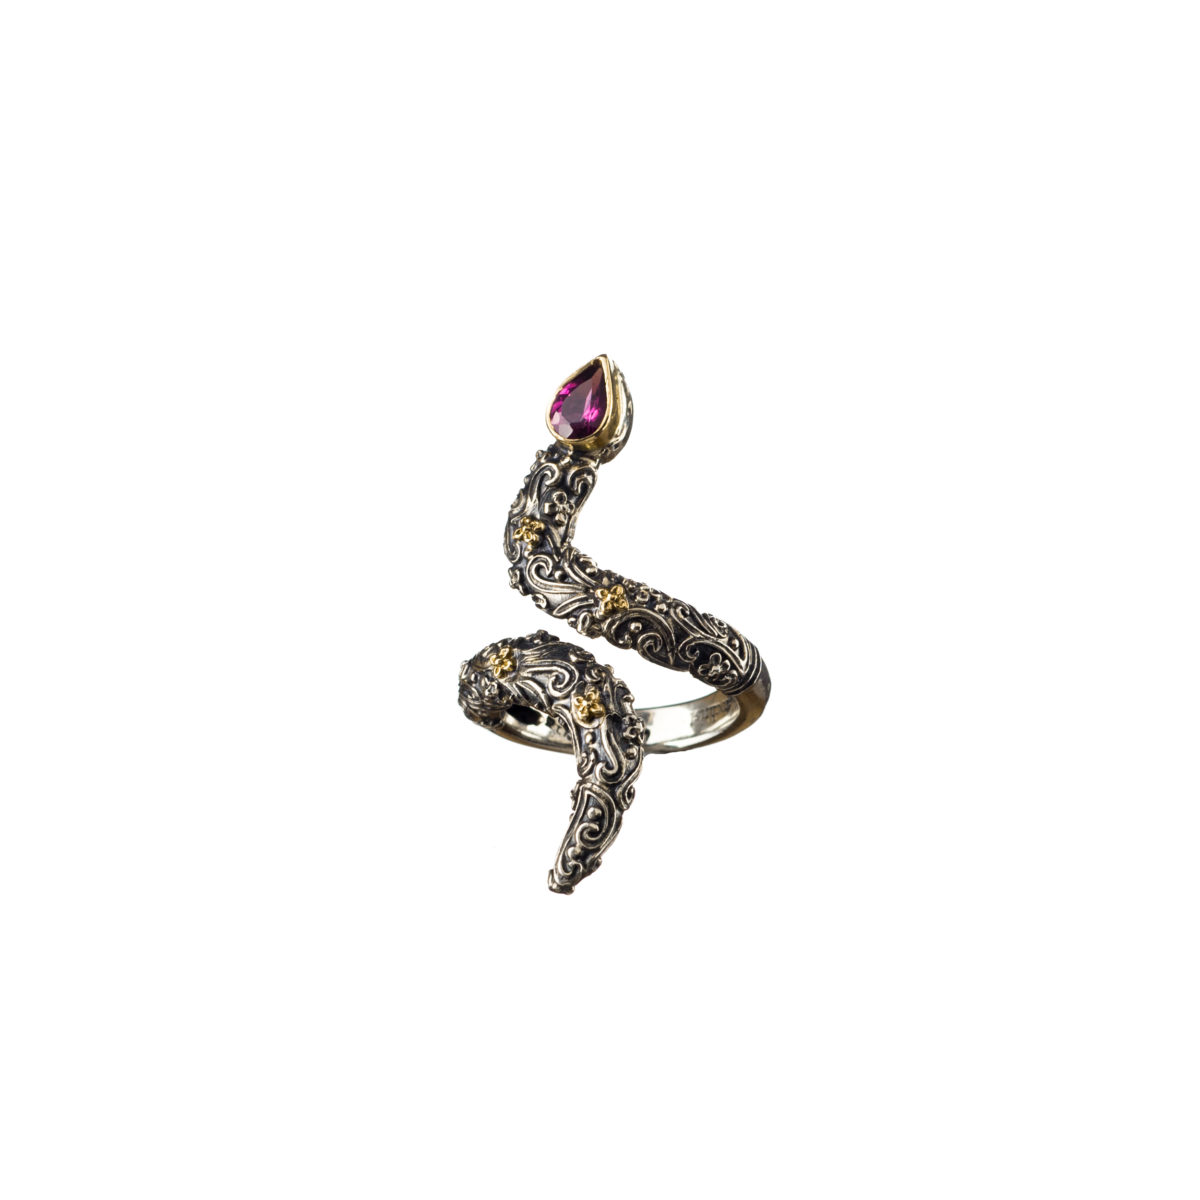 Εντυπωσιακό δαχτυλίδι Gerochristos σε σχήμα φιδιού στολισμένο με ένα πανέμορφο Ροδαλίτη